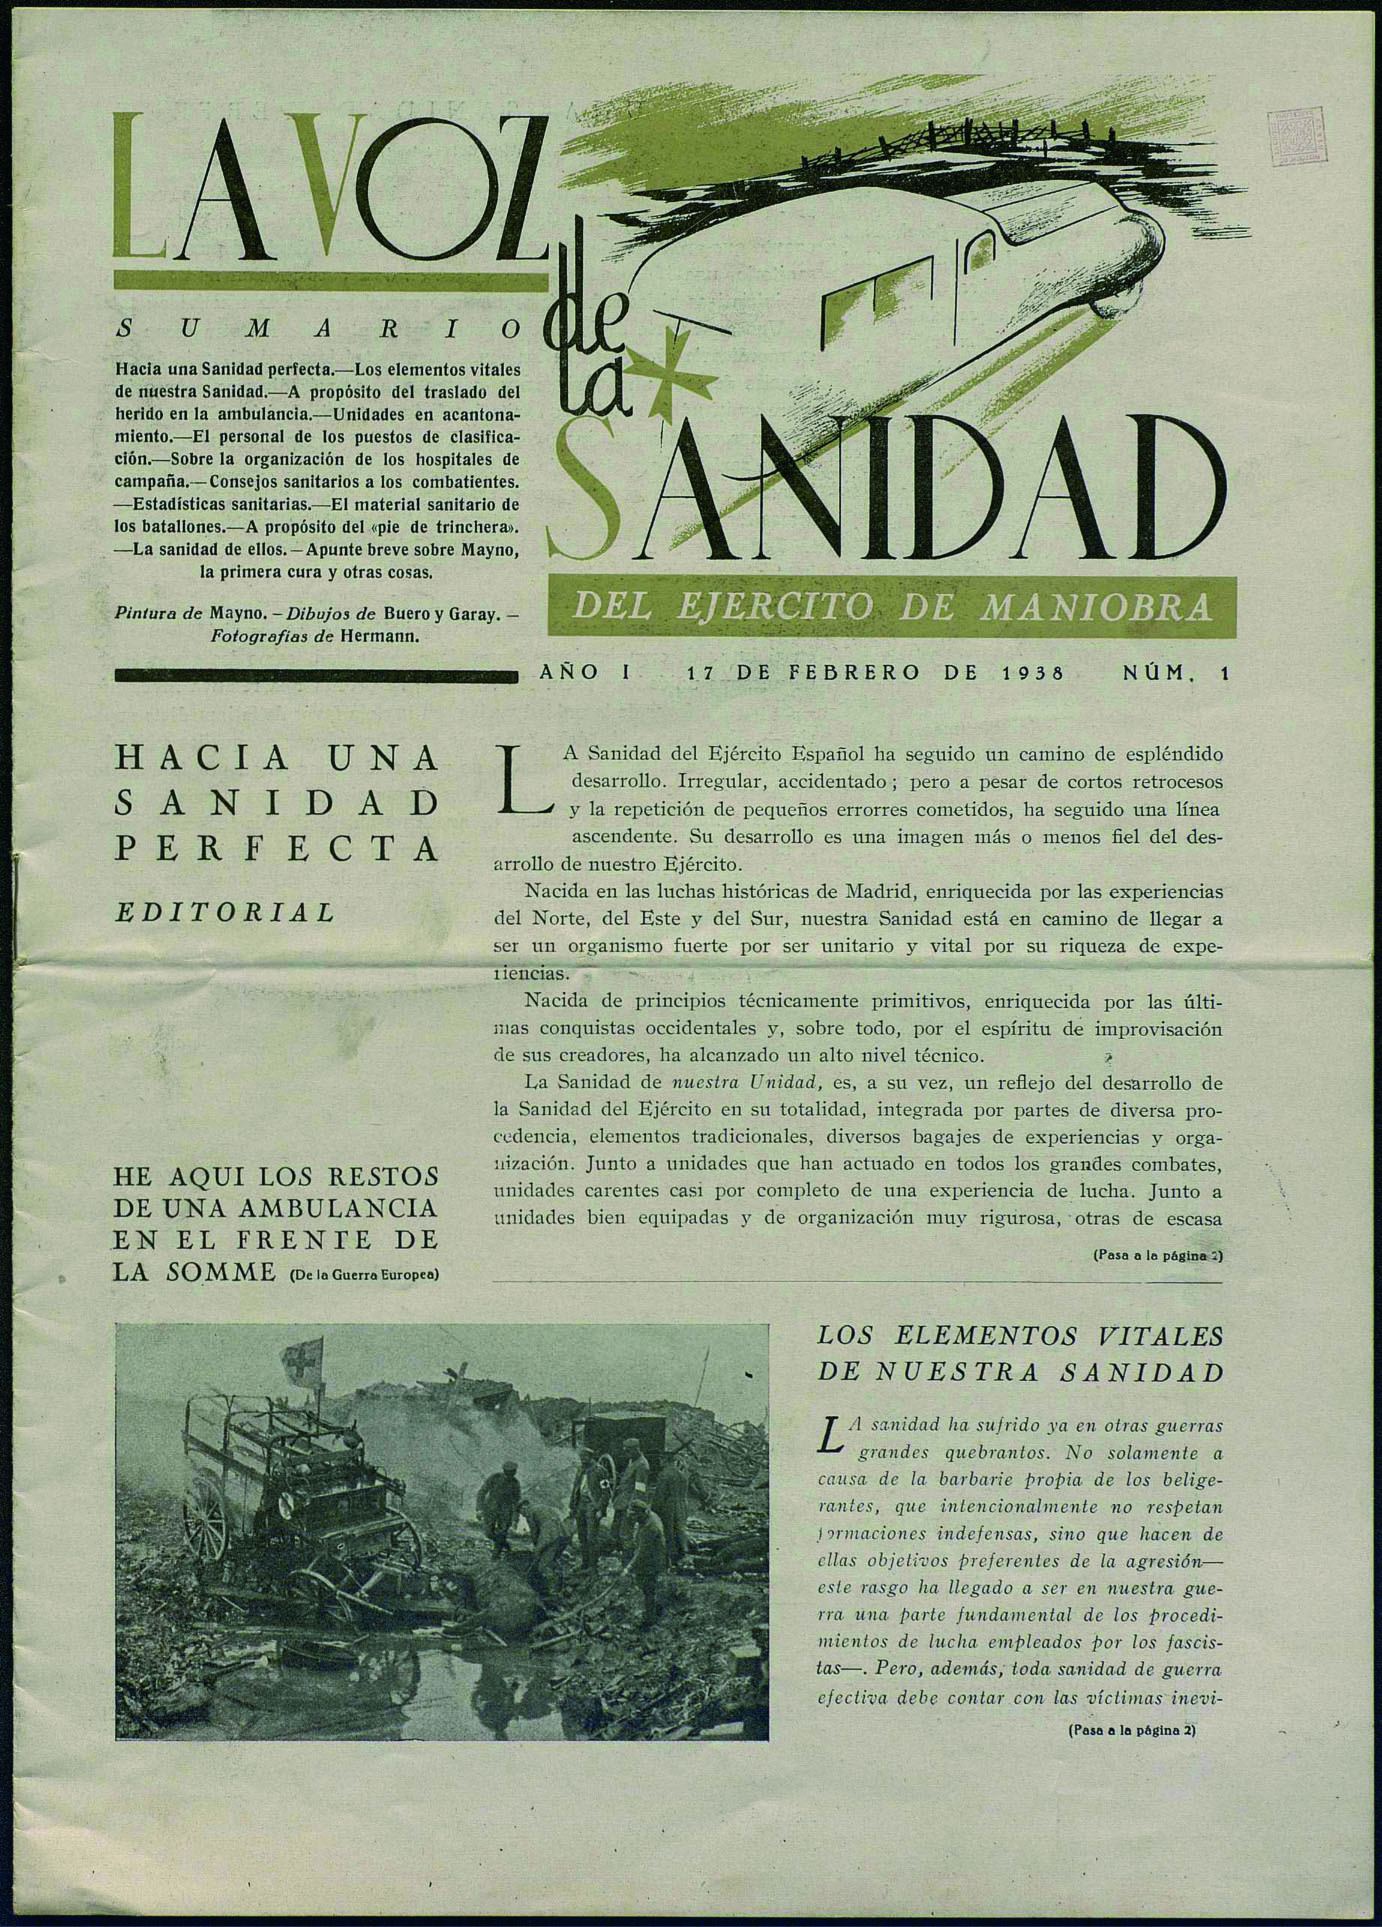 La Voz de la sanidad del ejército de maniobra. Núm. 1 (17 febrer 1938) portada